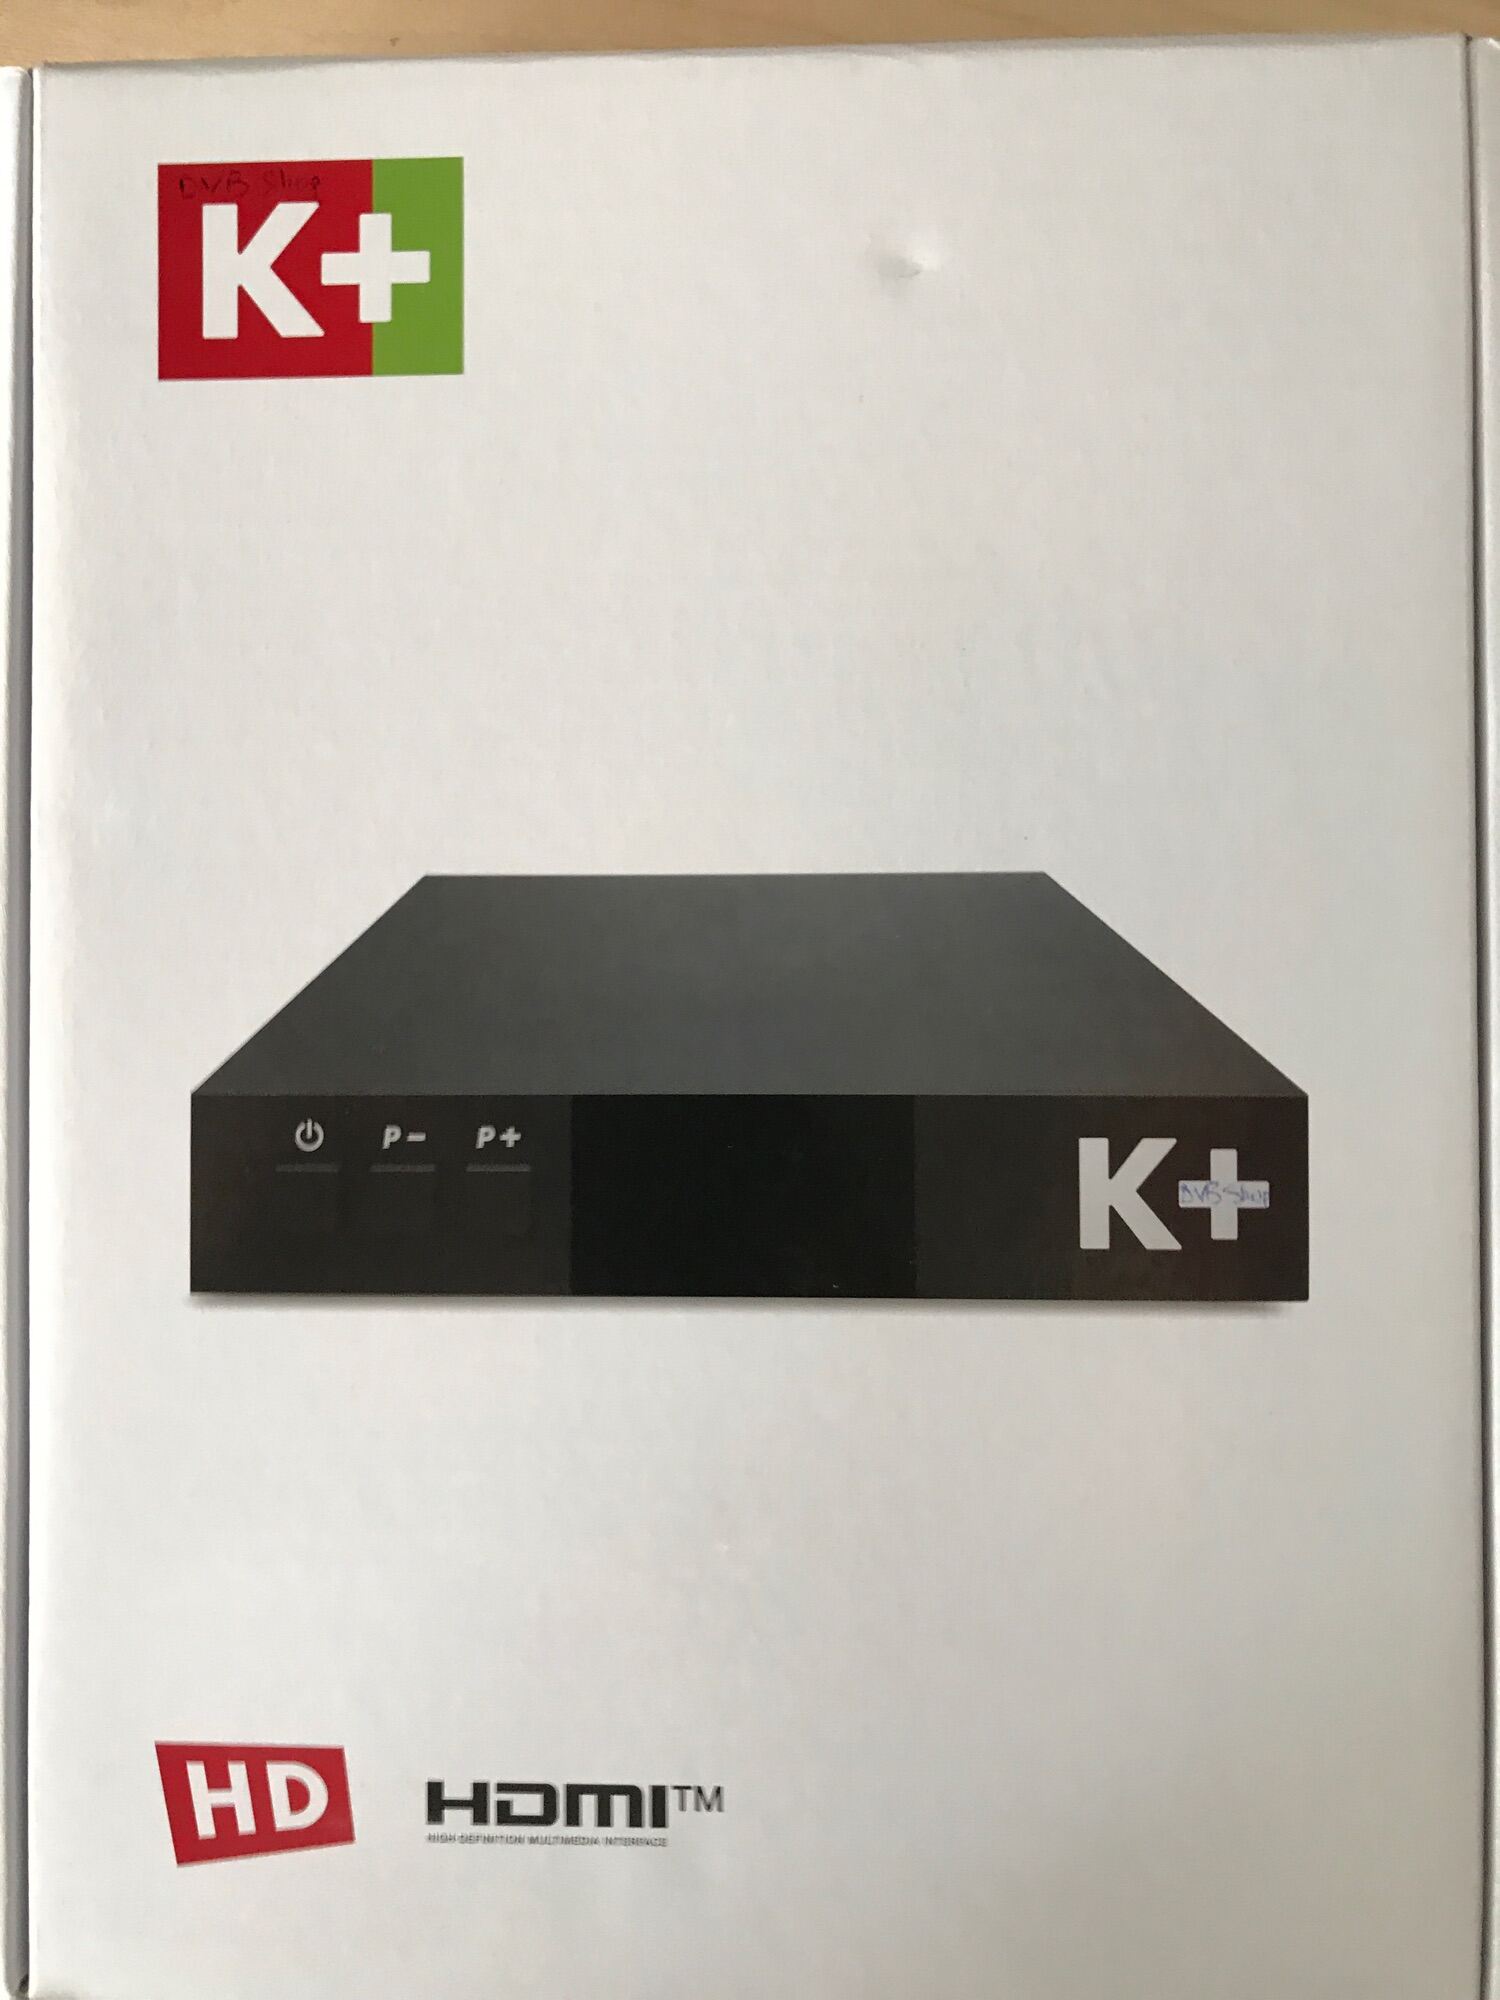 đầu thu K+ HD full Box nguyên seal tặng kèm thẻ smartcard